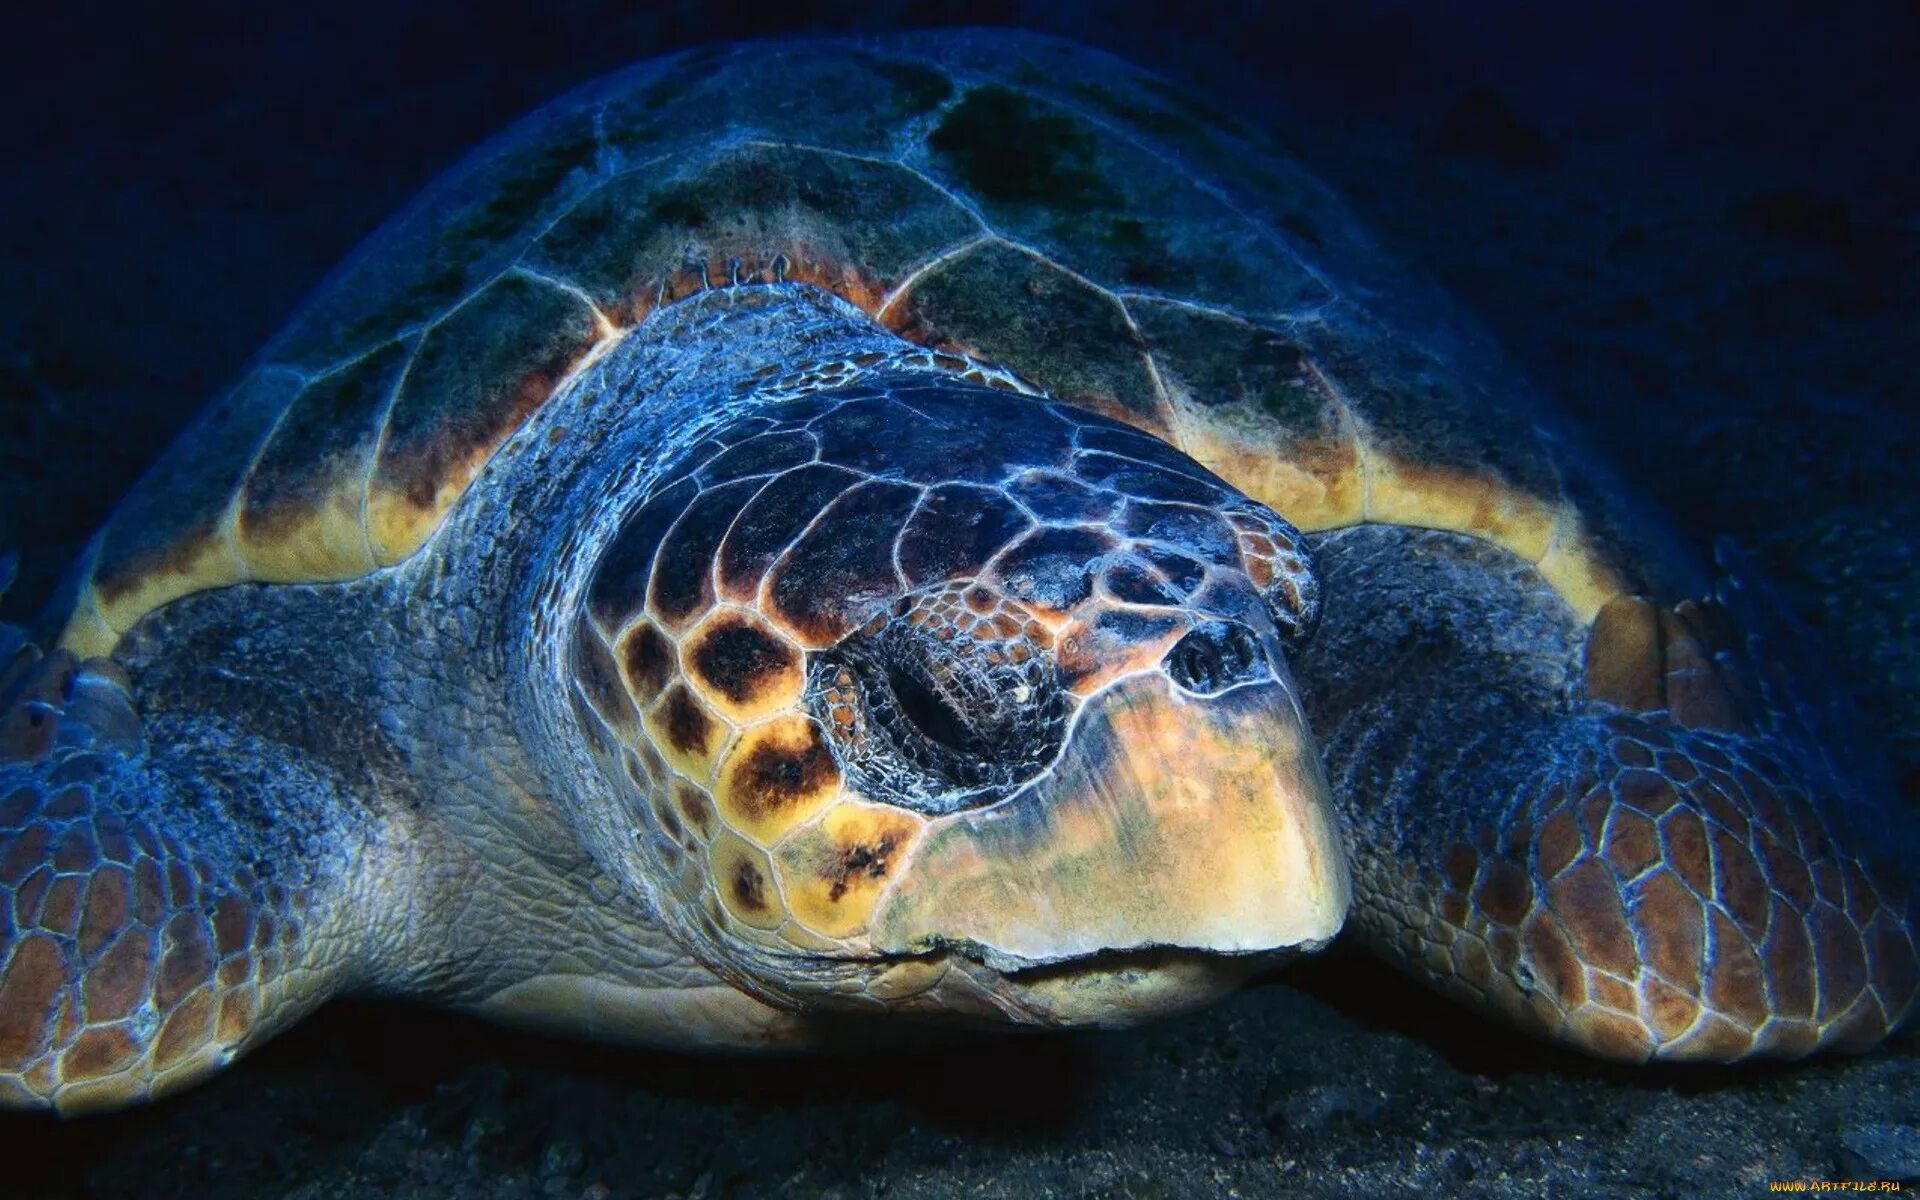 Красивая черепаха. Логгерхед. Самые красивые черепахи. Черепахи Атлантического океана. Морская черепаха.